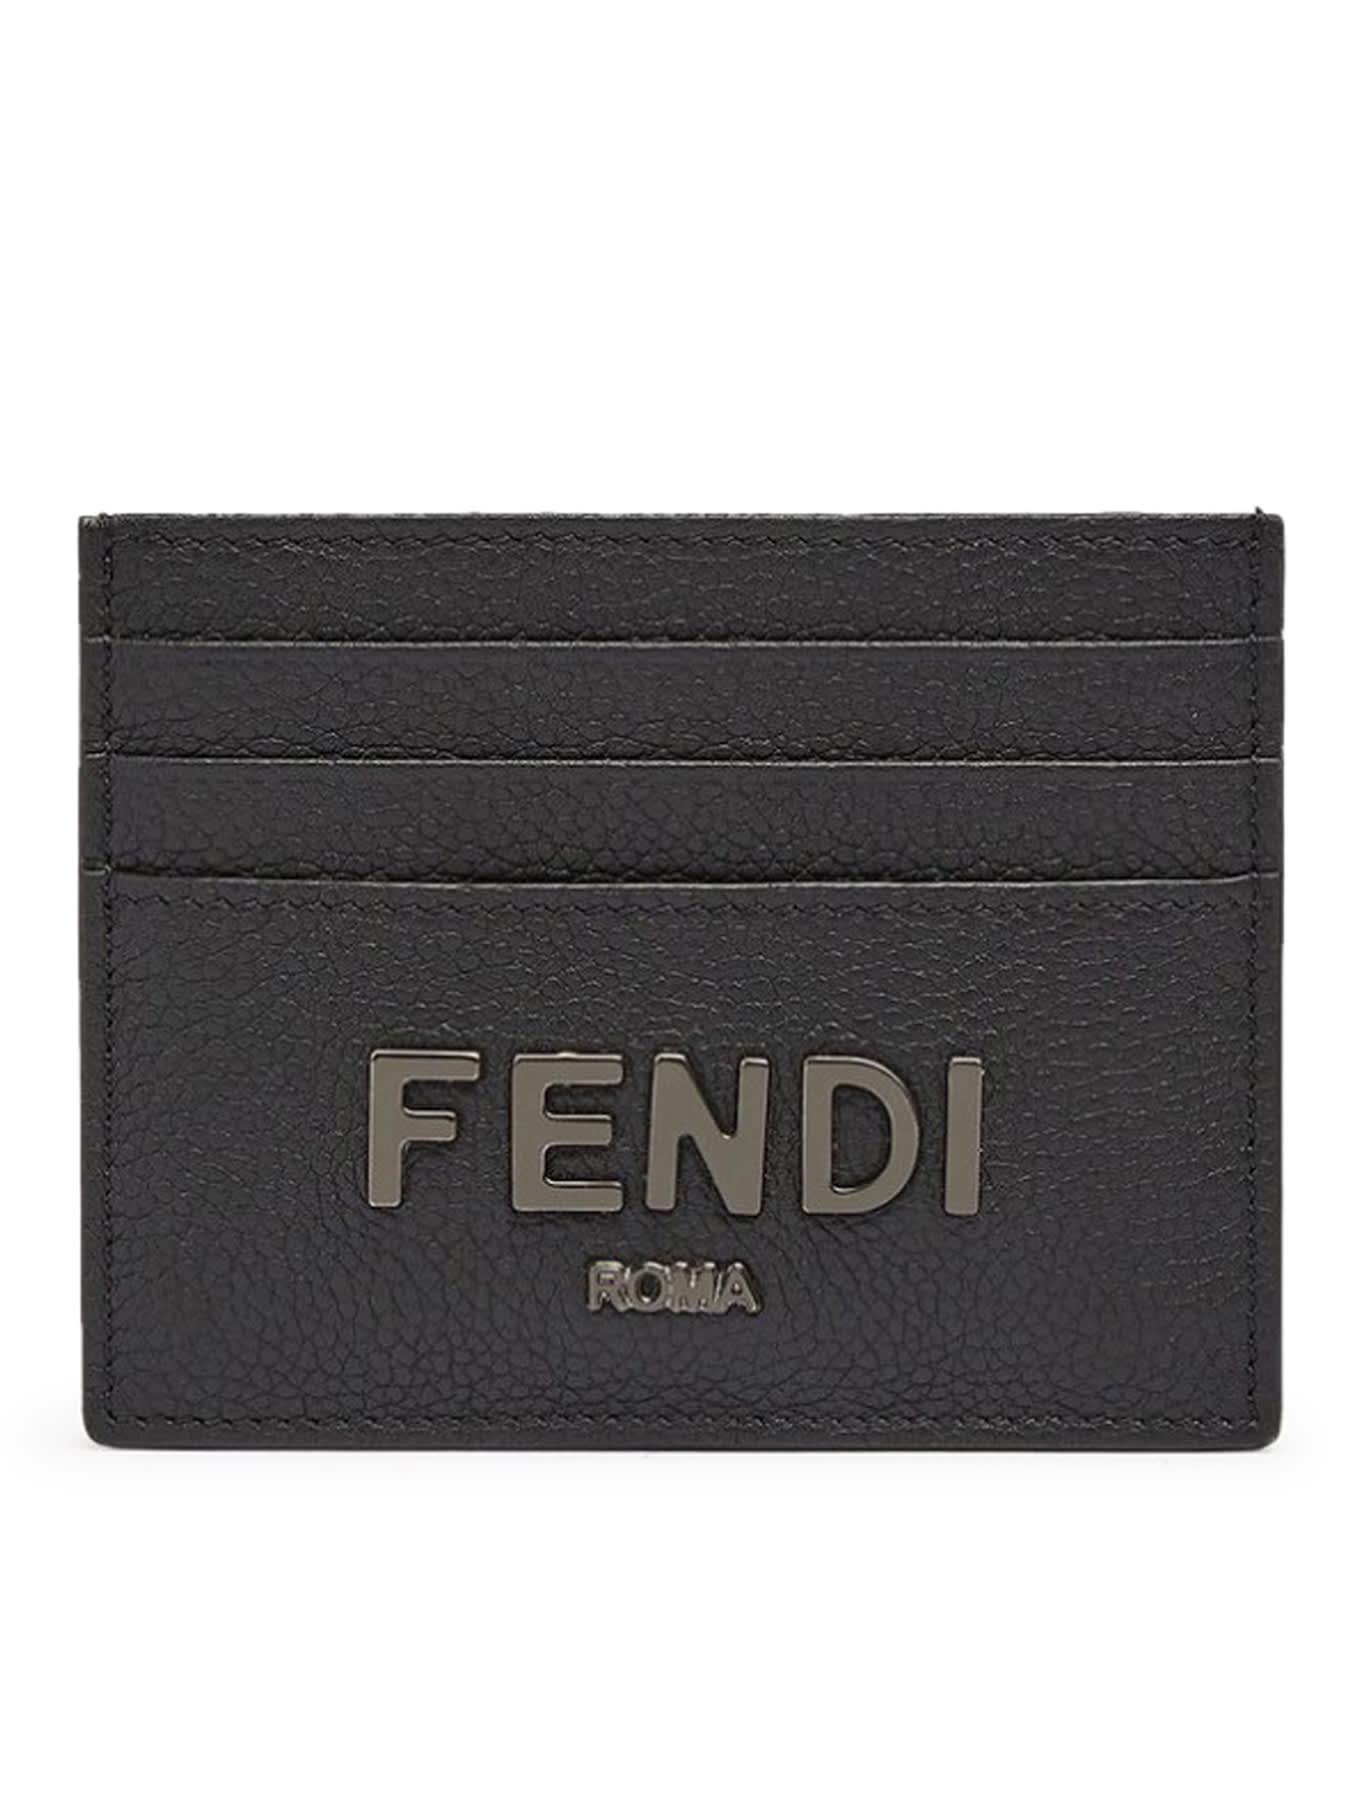 Fendi Card Case Vit.cher in Black for Men | Lyst